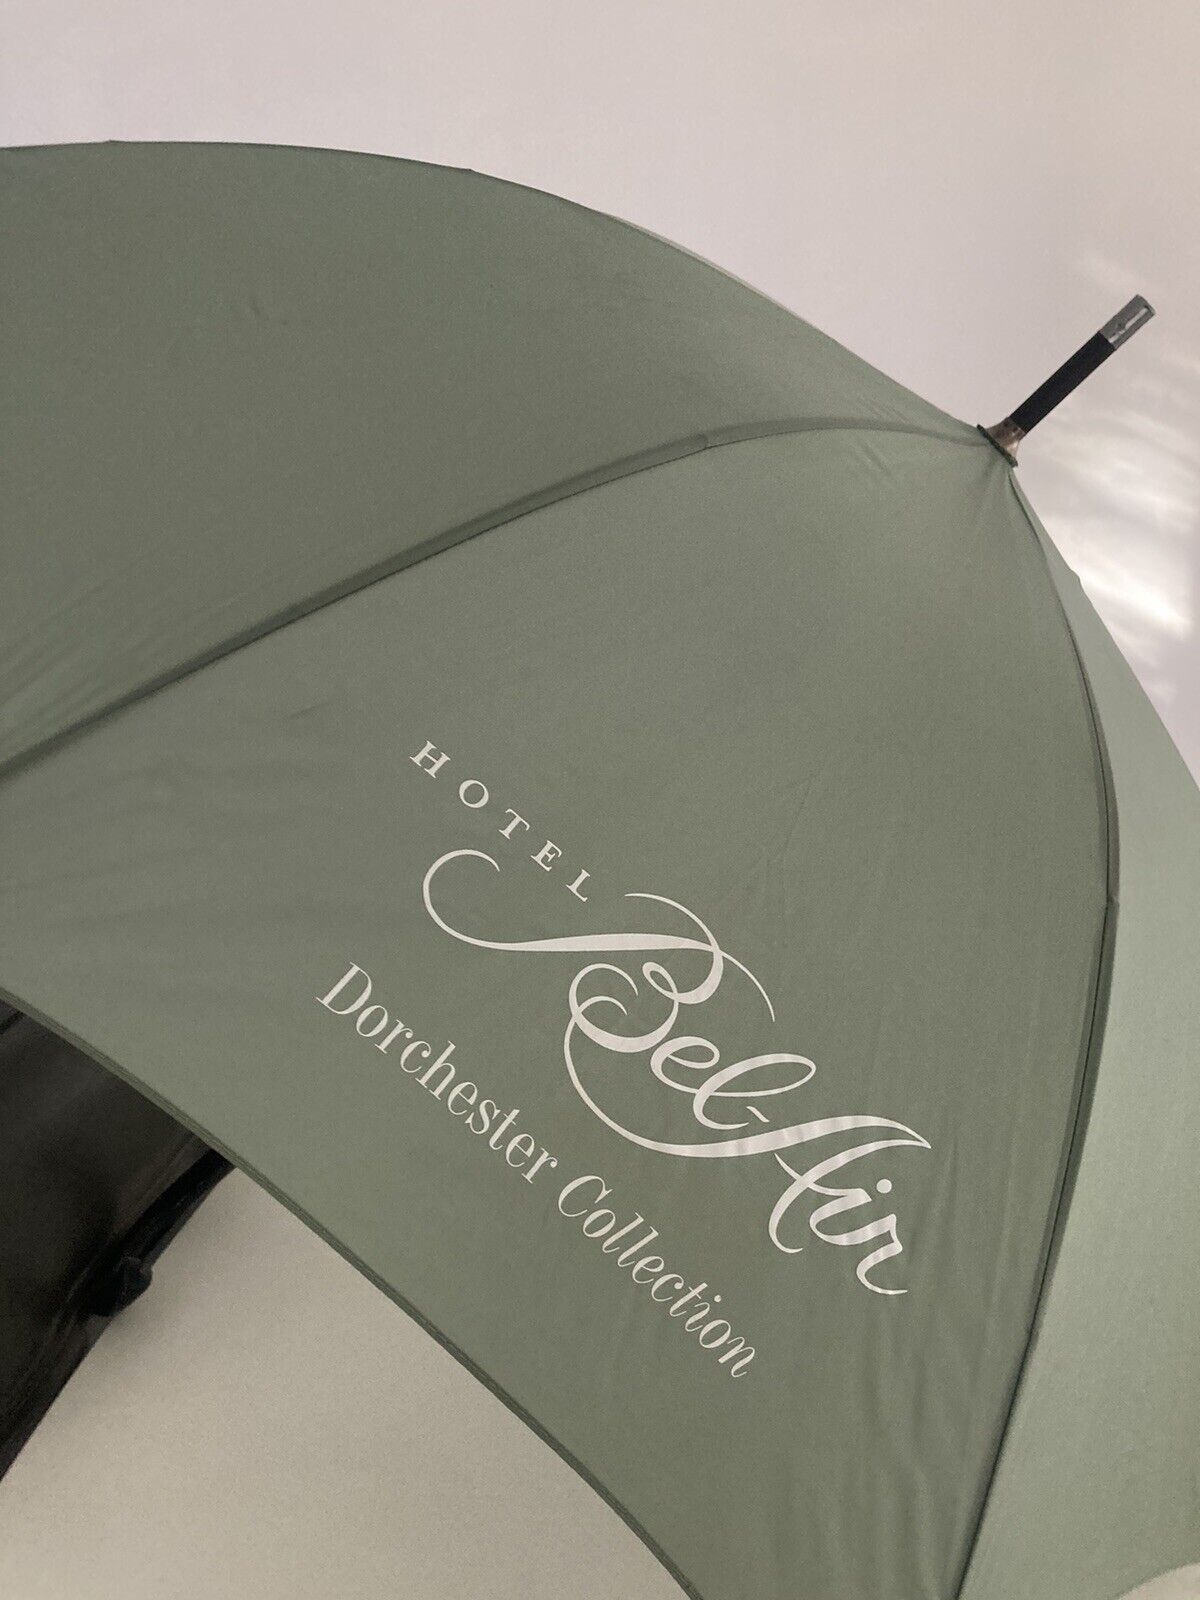 Umbrella vintage Bel Air hotel memorabilia Hollywood